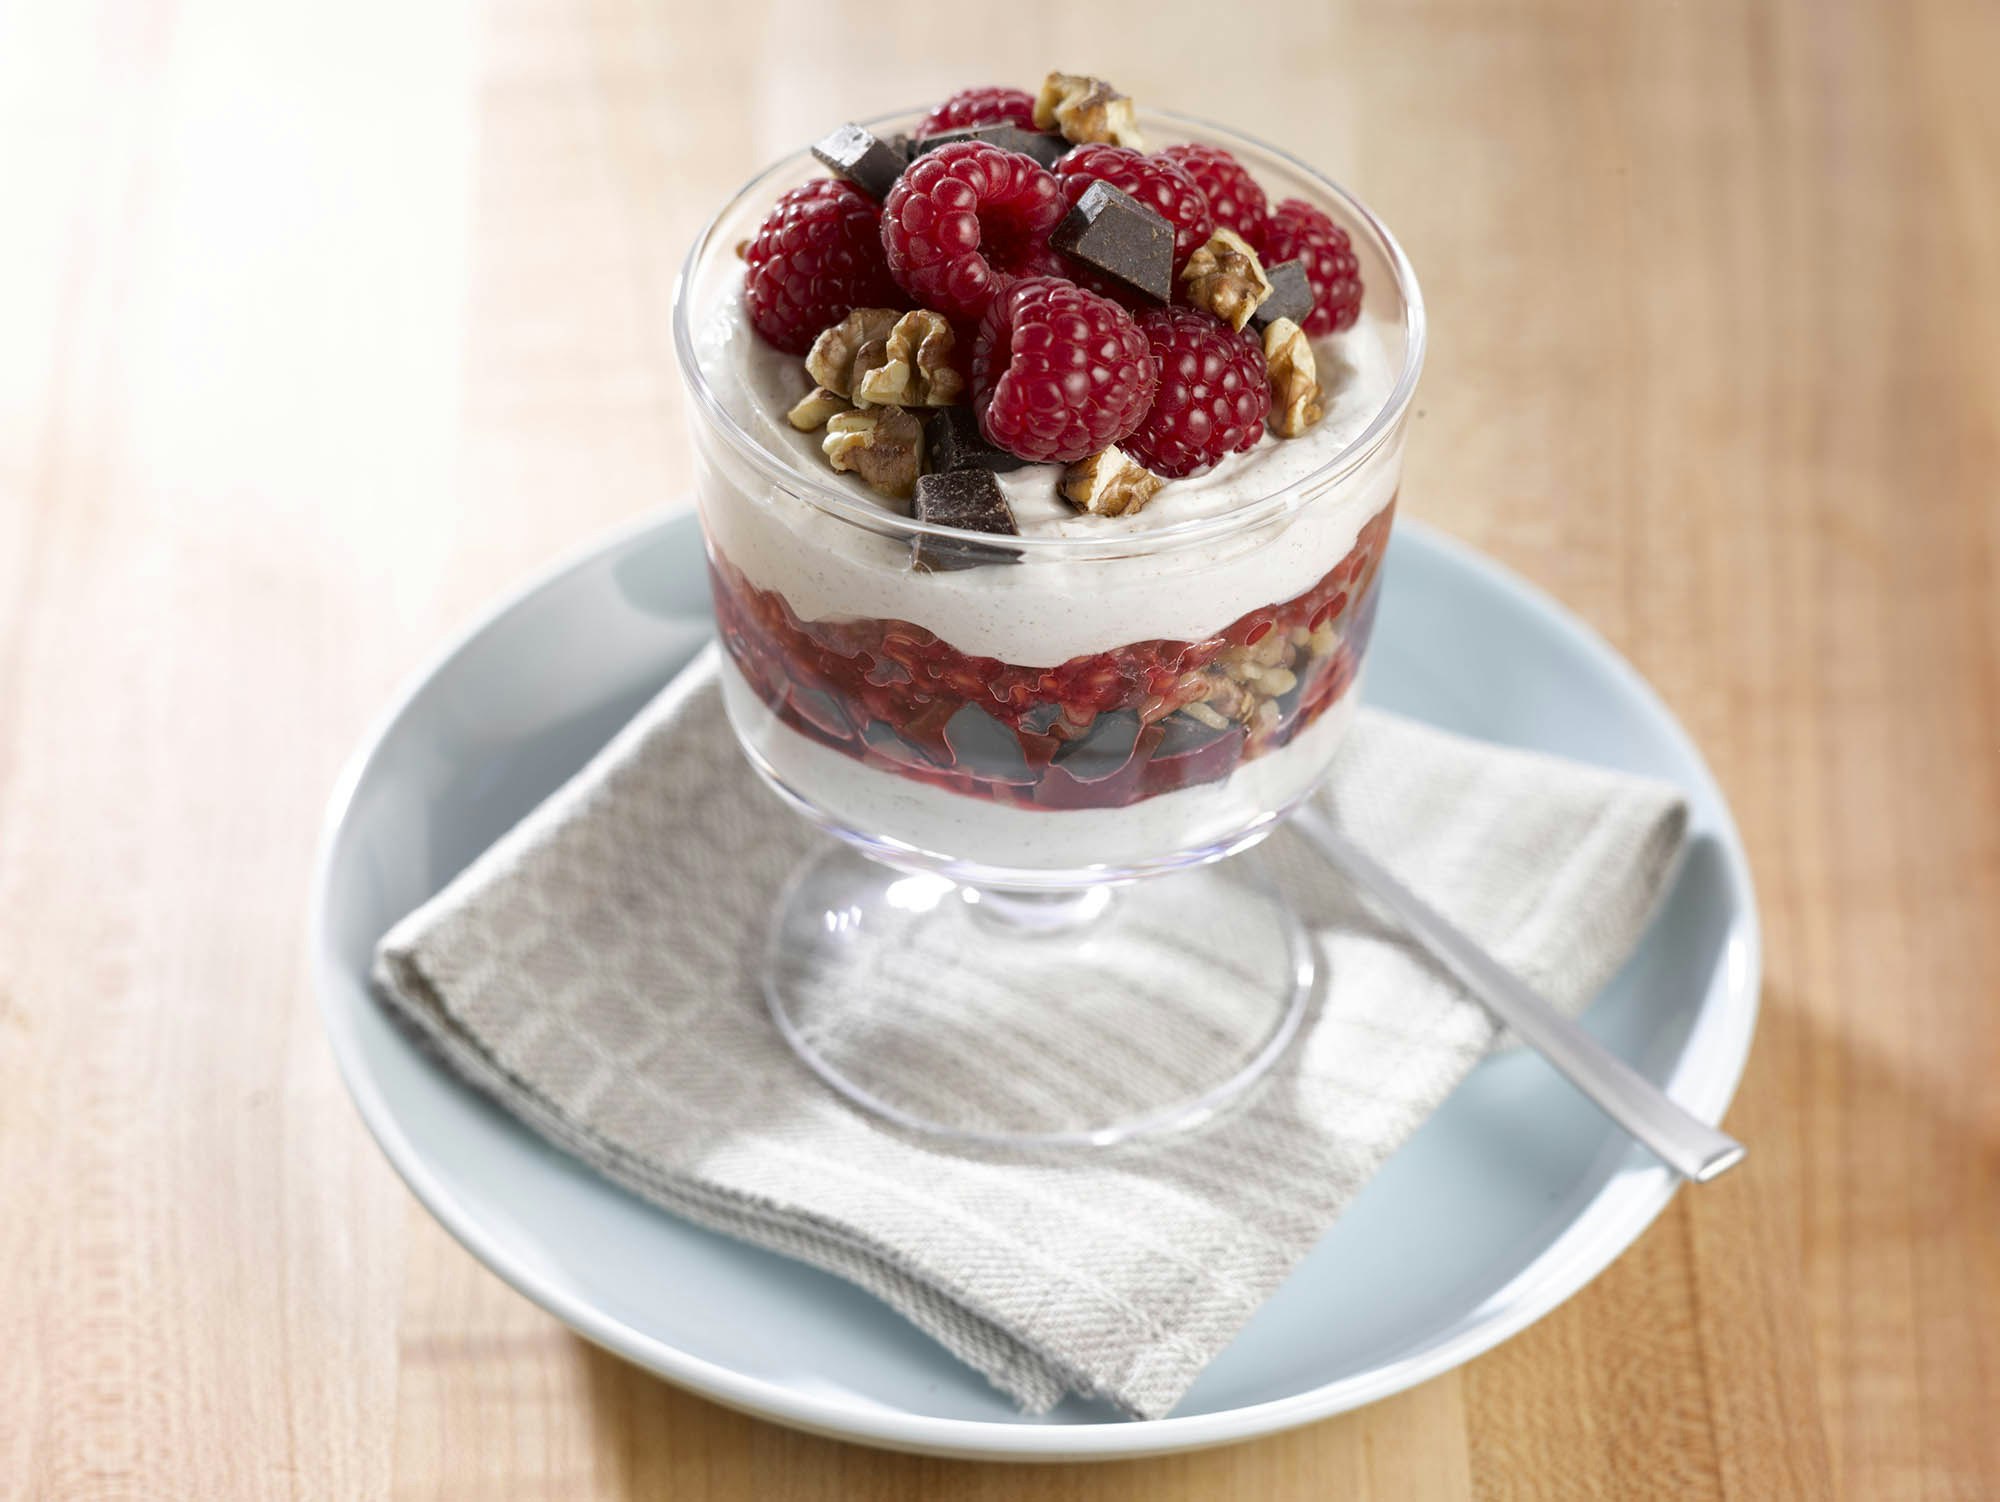 Glass of yogurt parfait layered with raspberries and dark chocolate granola 